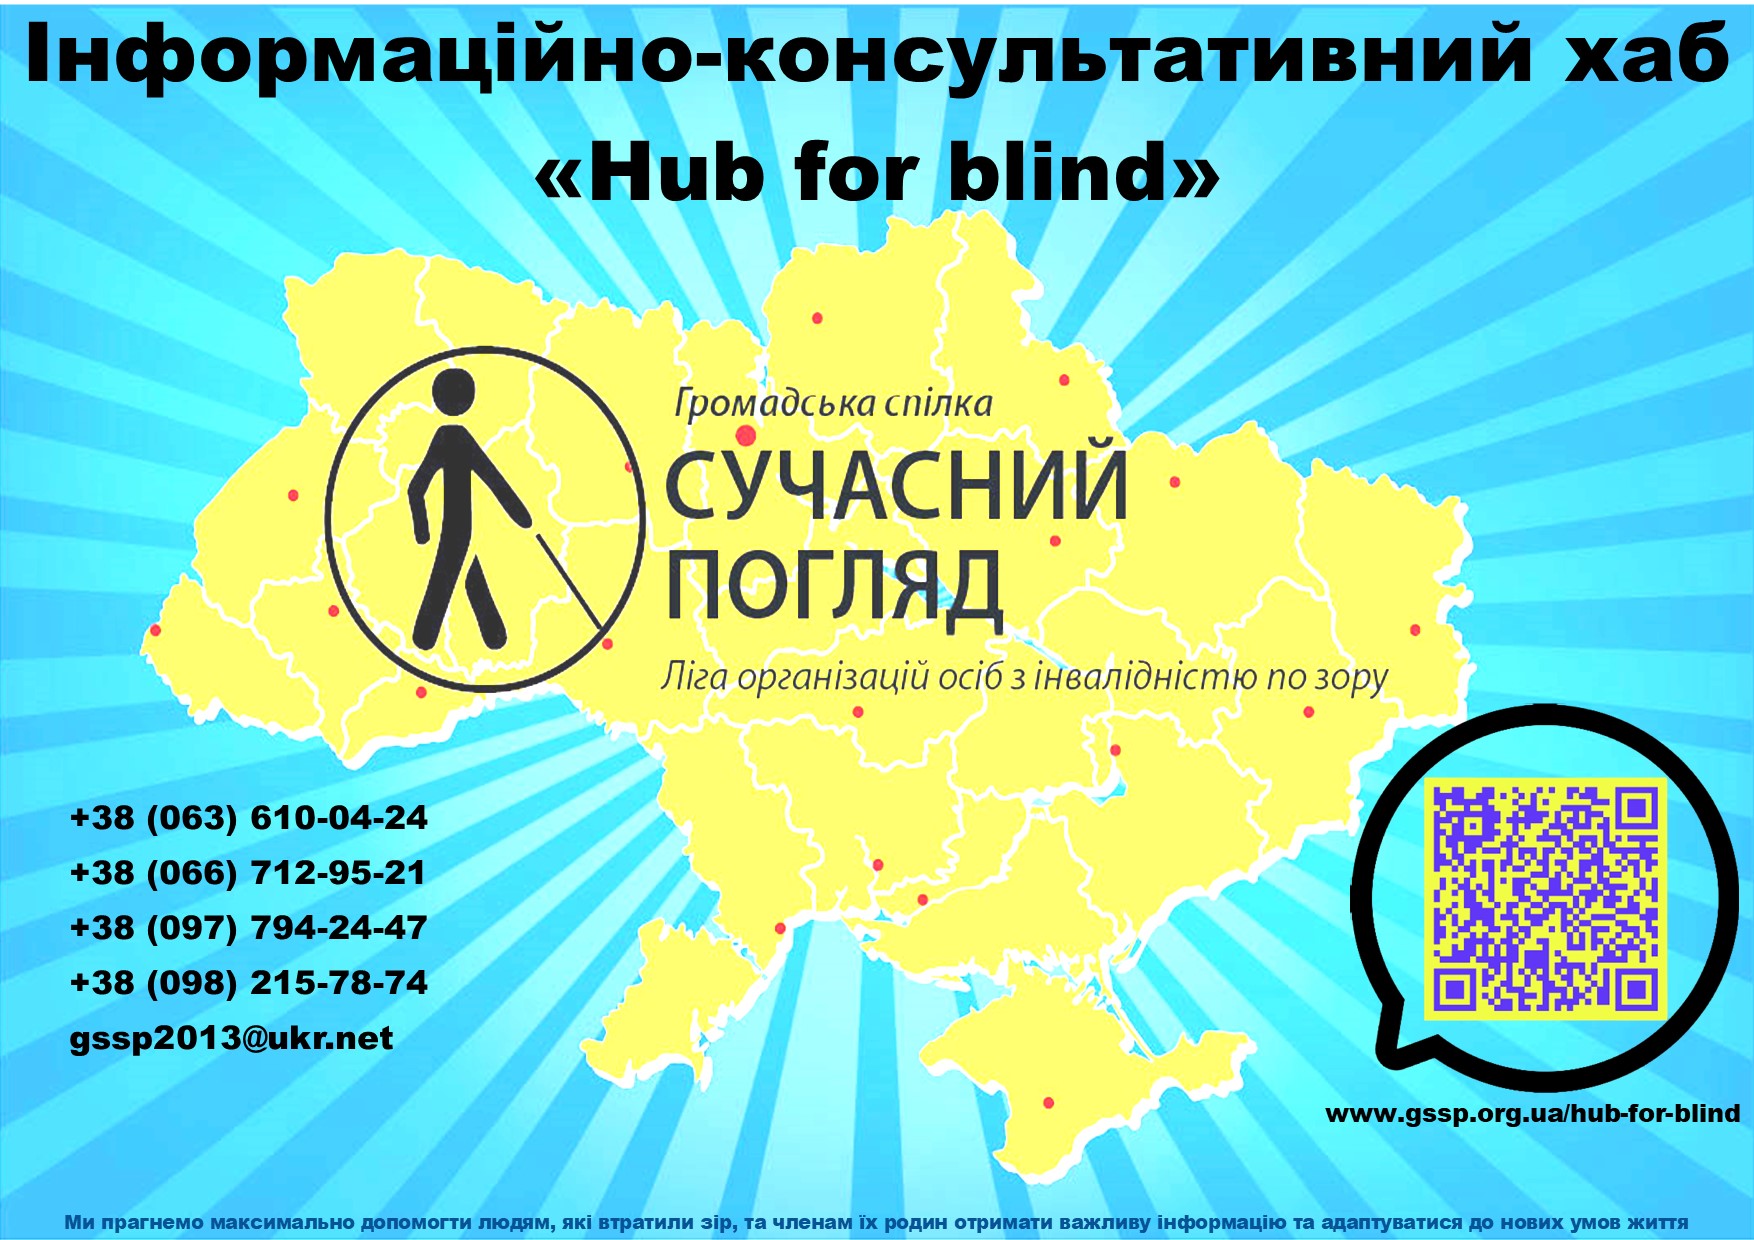 Свої канали зв’язку відкриє Інформаційно-консультативний хаб «Hub for blind».